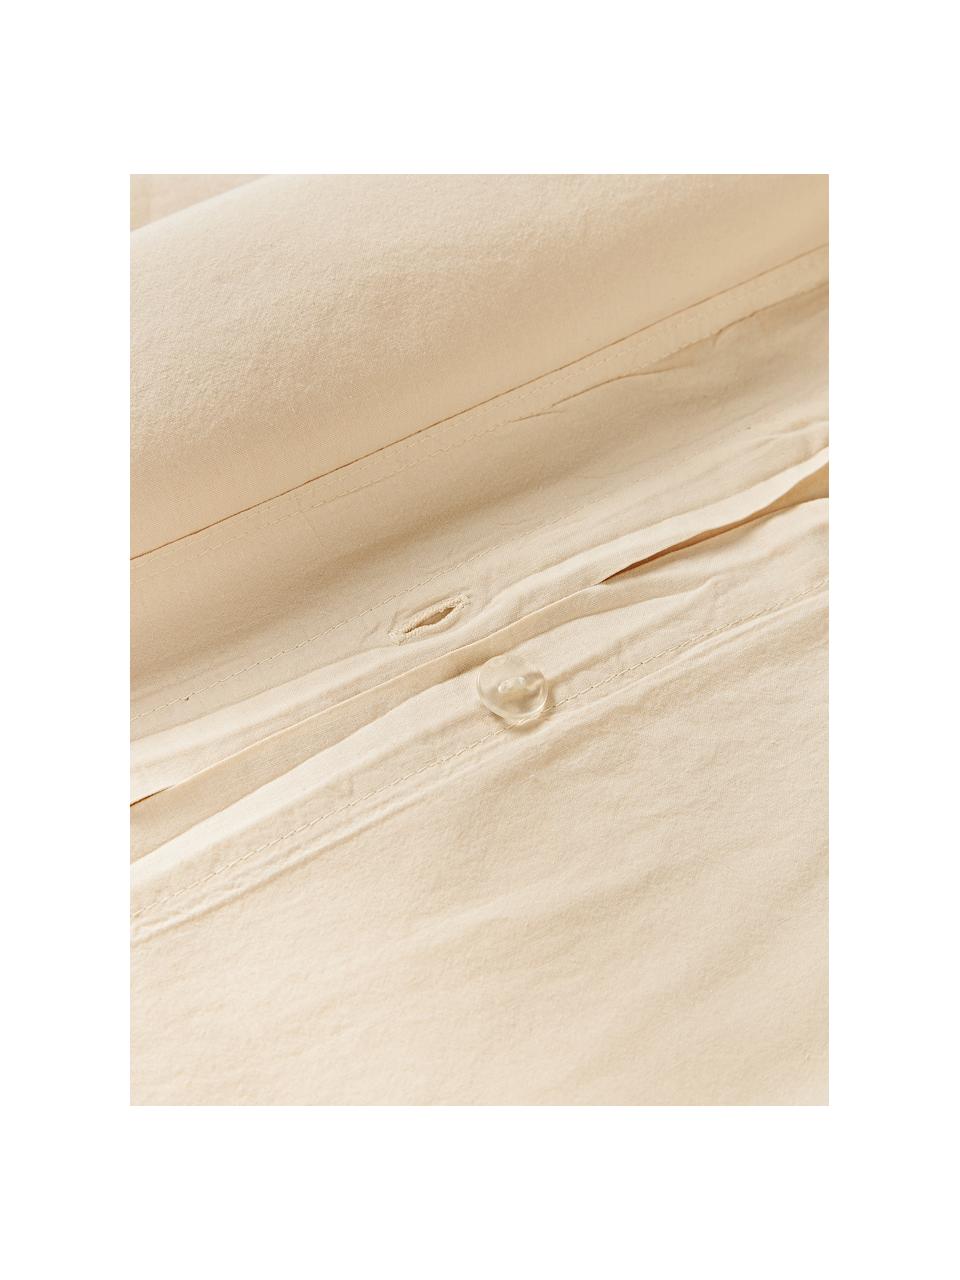 Funda de almohada de algodón lavado Darlyn, 100% algodón
Densidad de hilo 150 TC, calidad estándar

El algodón da una sensación agradable y suave en la piel, absorbe bien la humedad y es adecuado para personas alérgicas.

Este tejido ha sido sometido a un proceso de lavado especial que le da un aspecto Softwash irregular y resistente, pero siendo suave al tacto, flexible y cómodo. Además, su aspecto arrugado natural hace que no necesite planchado.

El material utilizado para este producto ha sido probado contra sustancias nocivas y está certificado según el STANDARD 100 por OEKO-TEX®, 4265CIT, CITEVE., Beige claro, An 45 x L 110 cm